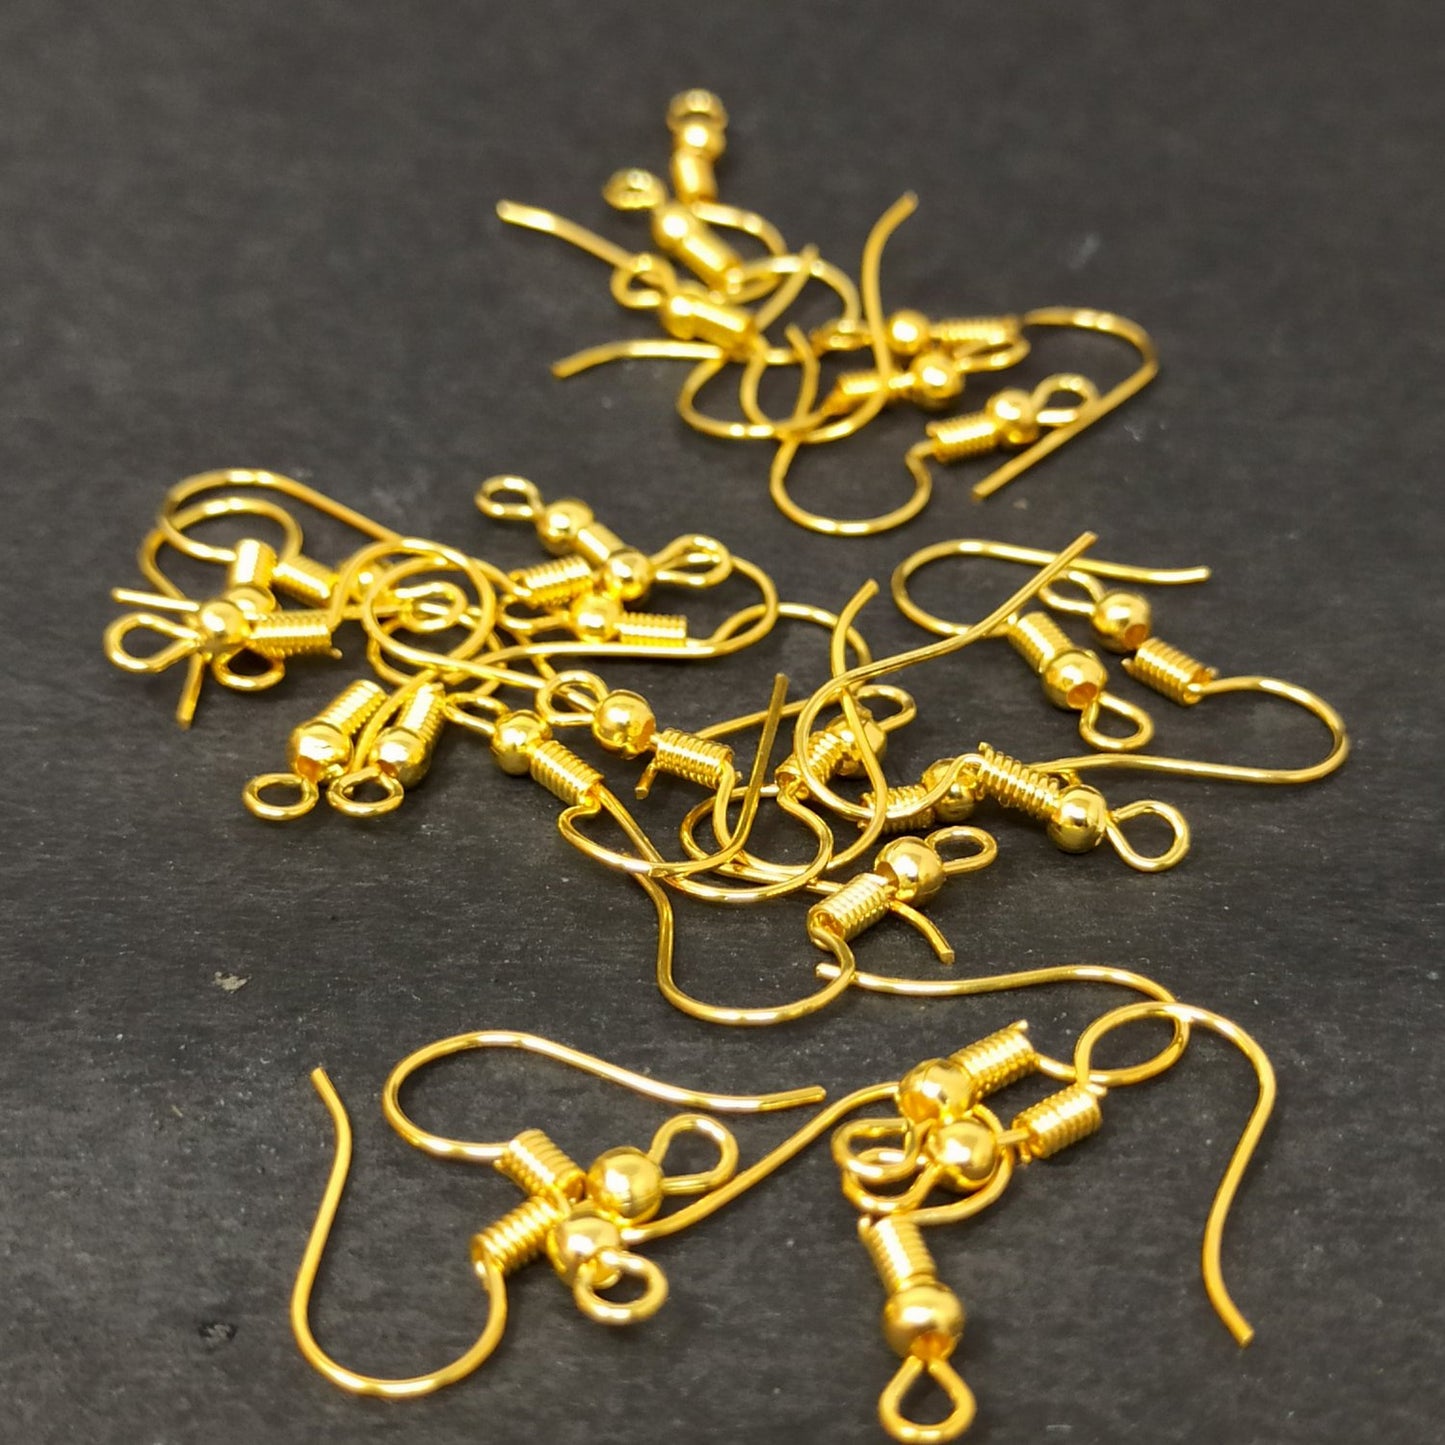 Golden Earring Fish Hooks for Making Earrings (25 Pcs) - 96-31